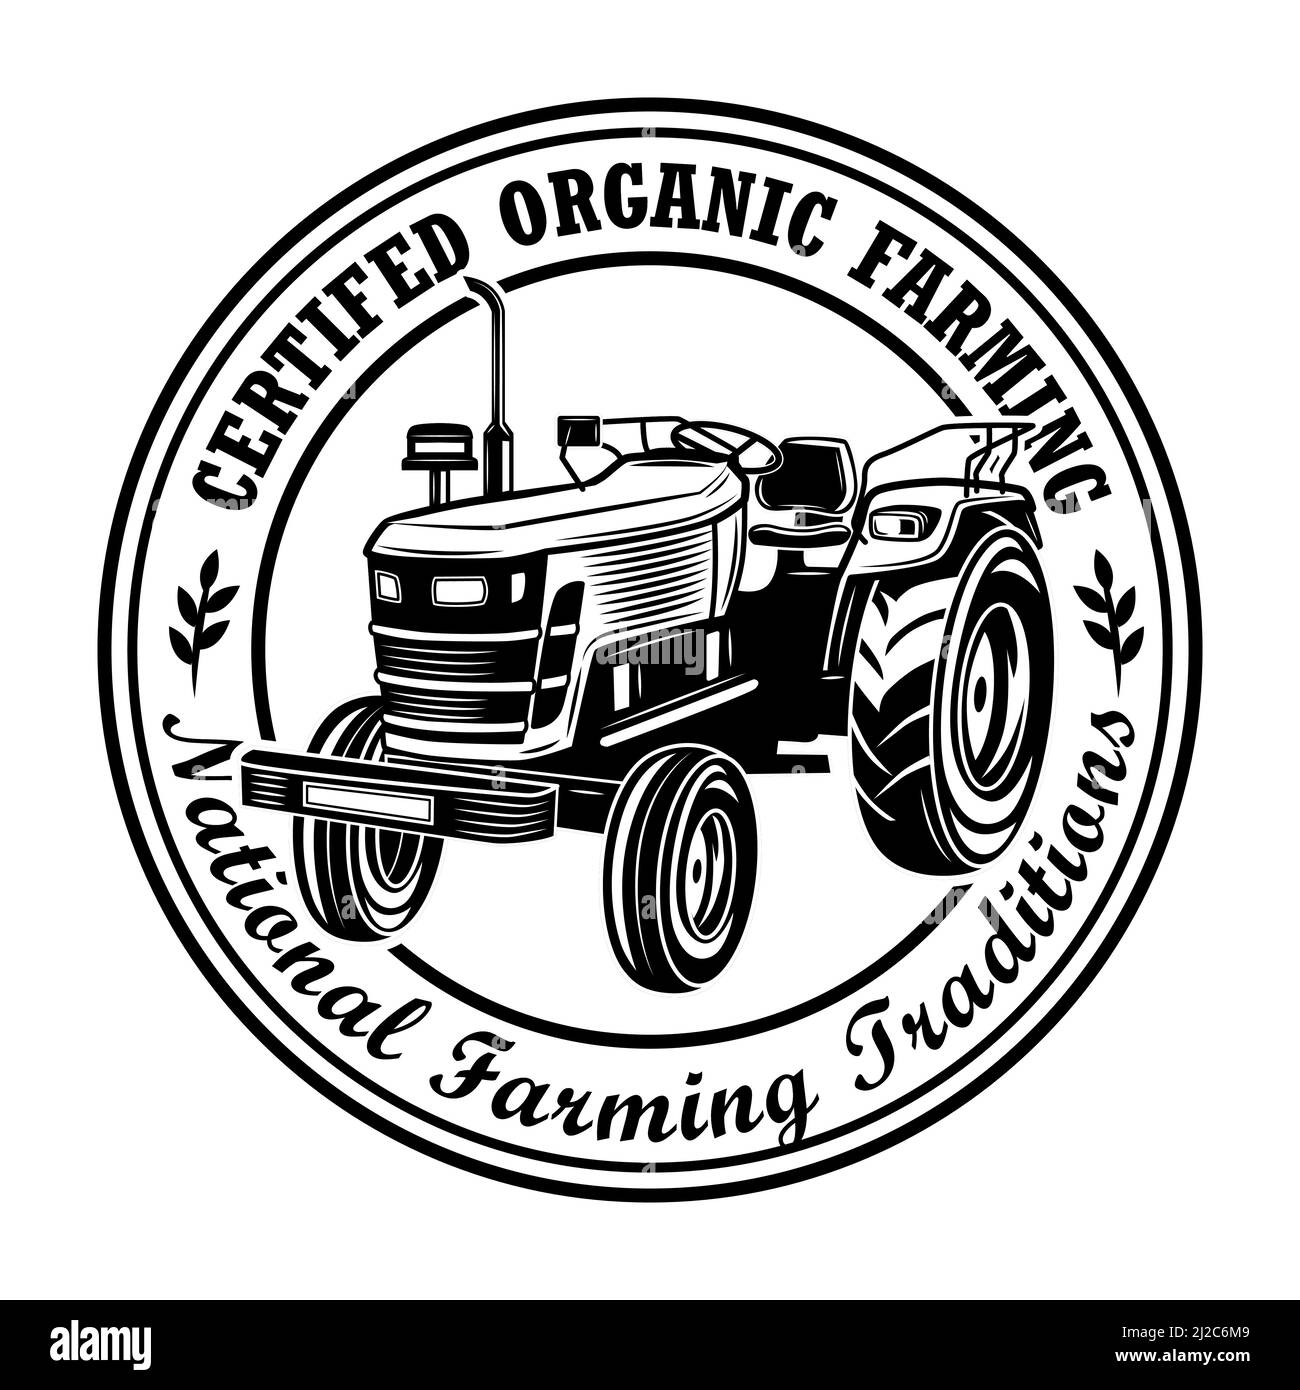 Zertifizierte Bio-Landwirtschaft Stempel Vektor Illustration. Landwirt Traktor, kreisförmigen Rahmen, nationale Traditionen Text. Landwirtschaft oder Agronomie Konzept für em Stock Vektor